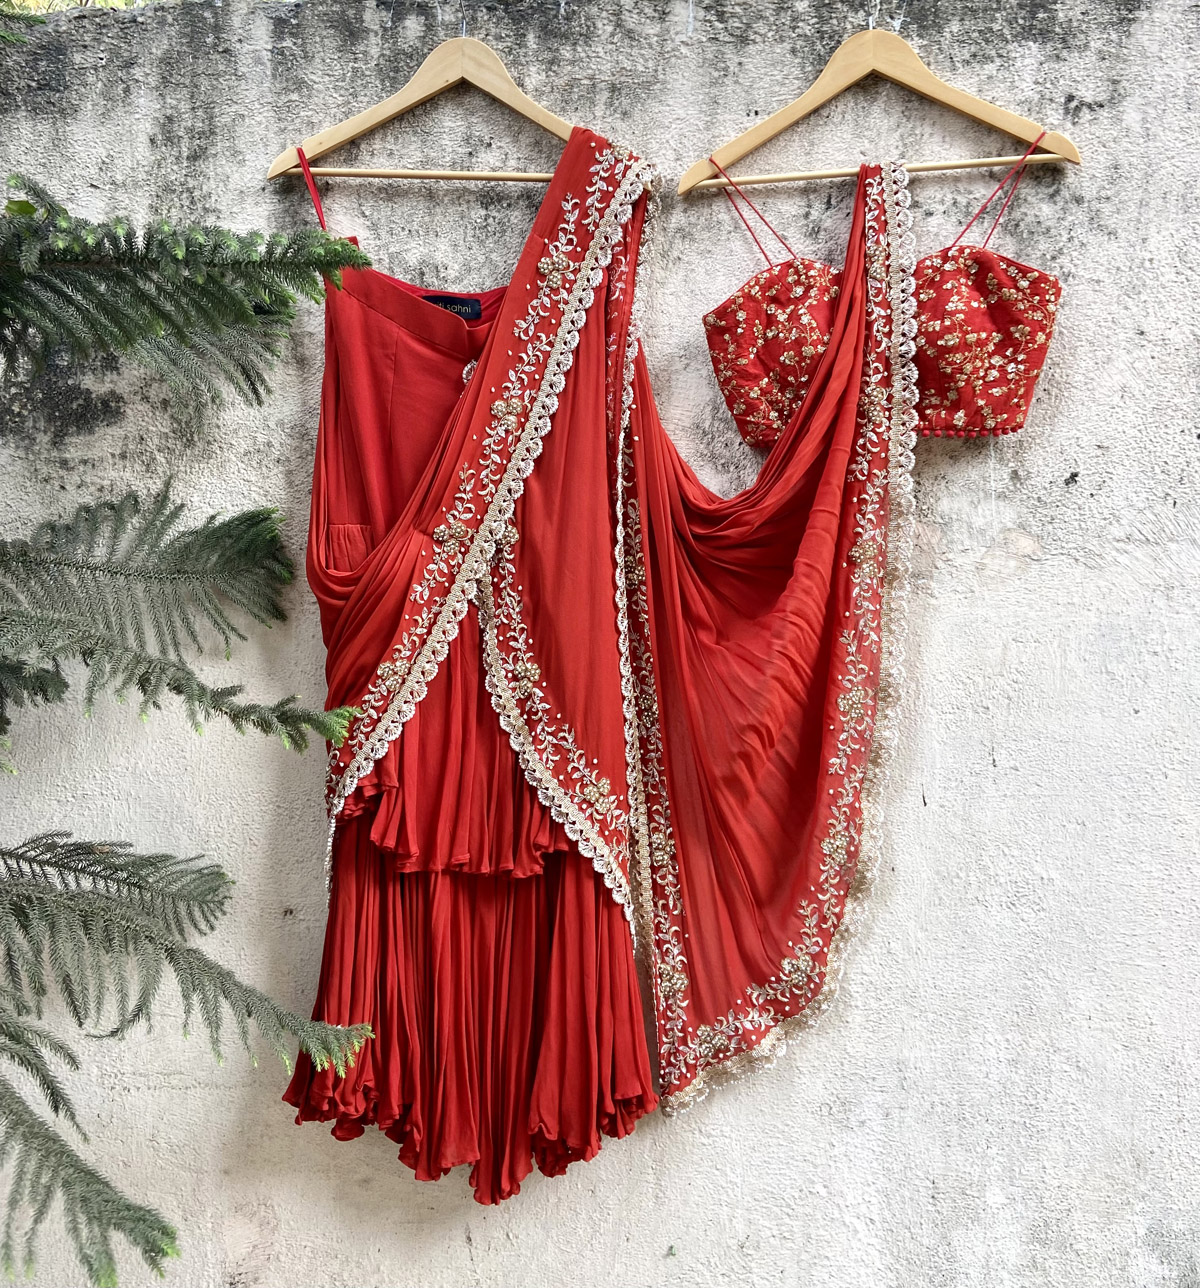 Rust Red Pre-Stitched Ruffle Saree - Fashion Brand & Designer Priti Sahni